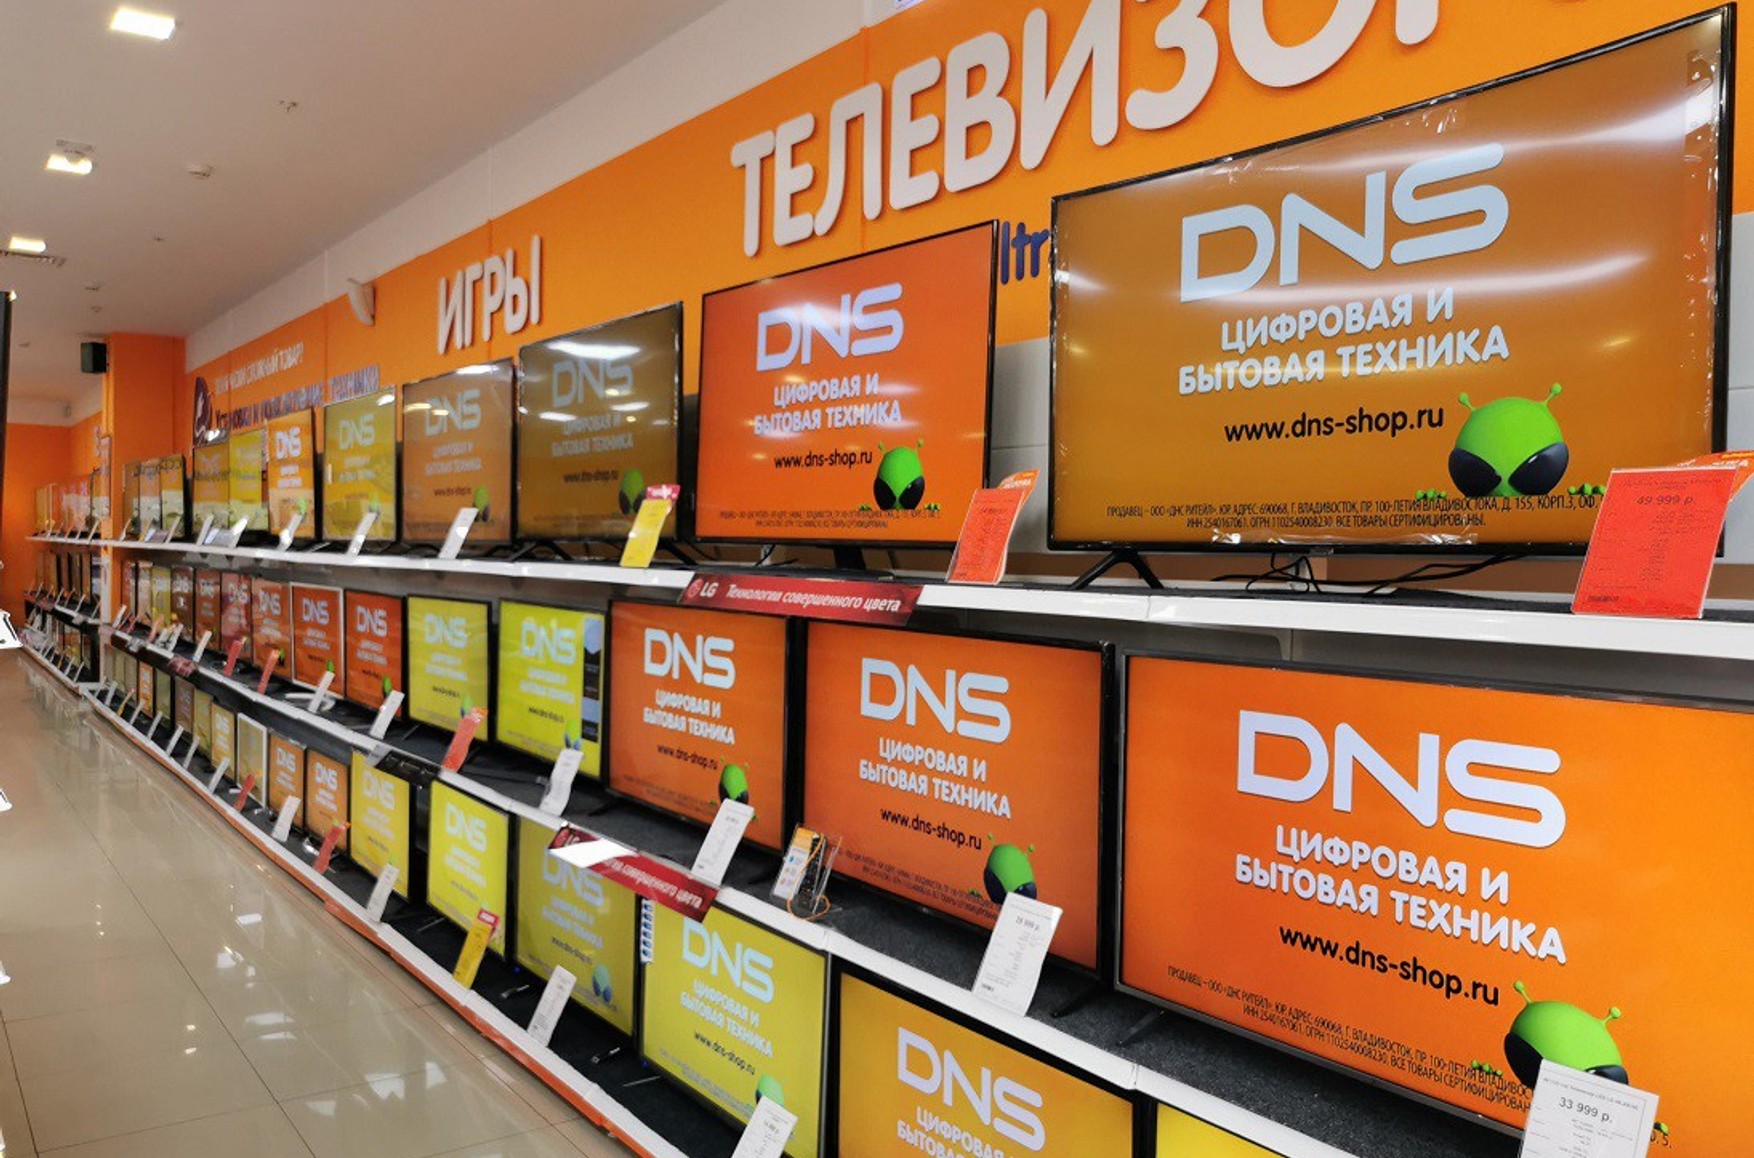 Сеть электроники DNS заявила о взломе и утечке персональных данных своих покупателей